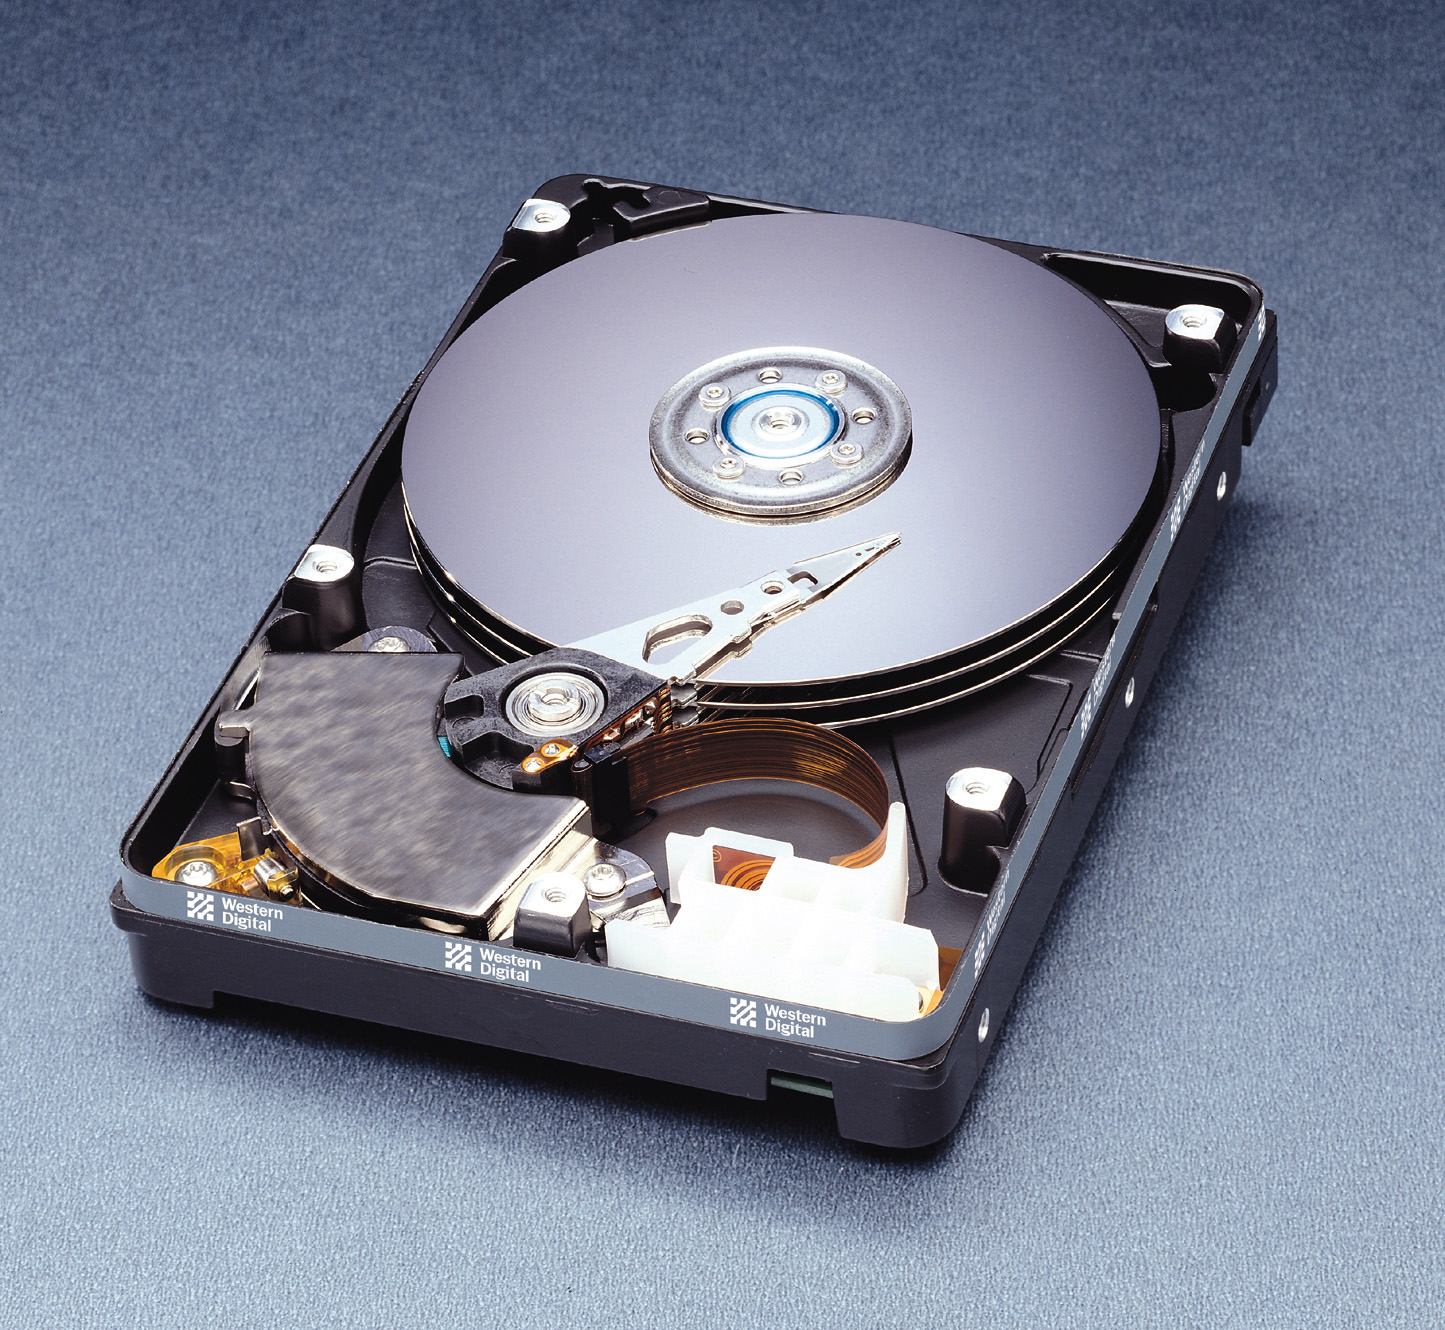 Нужно новый жесткий. НЖМД Винчестер. Жесткий магнитный диск Винчестер. Жесткий диск 50 МБ 1995. HDD 50nb.